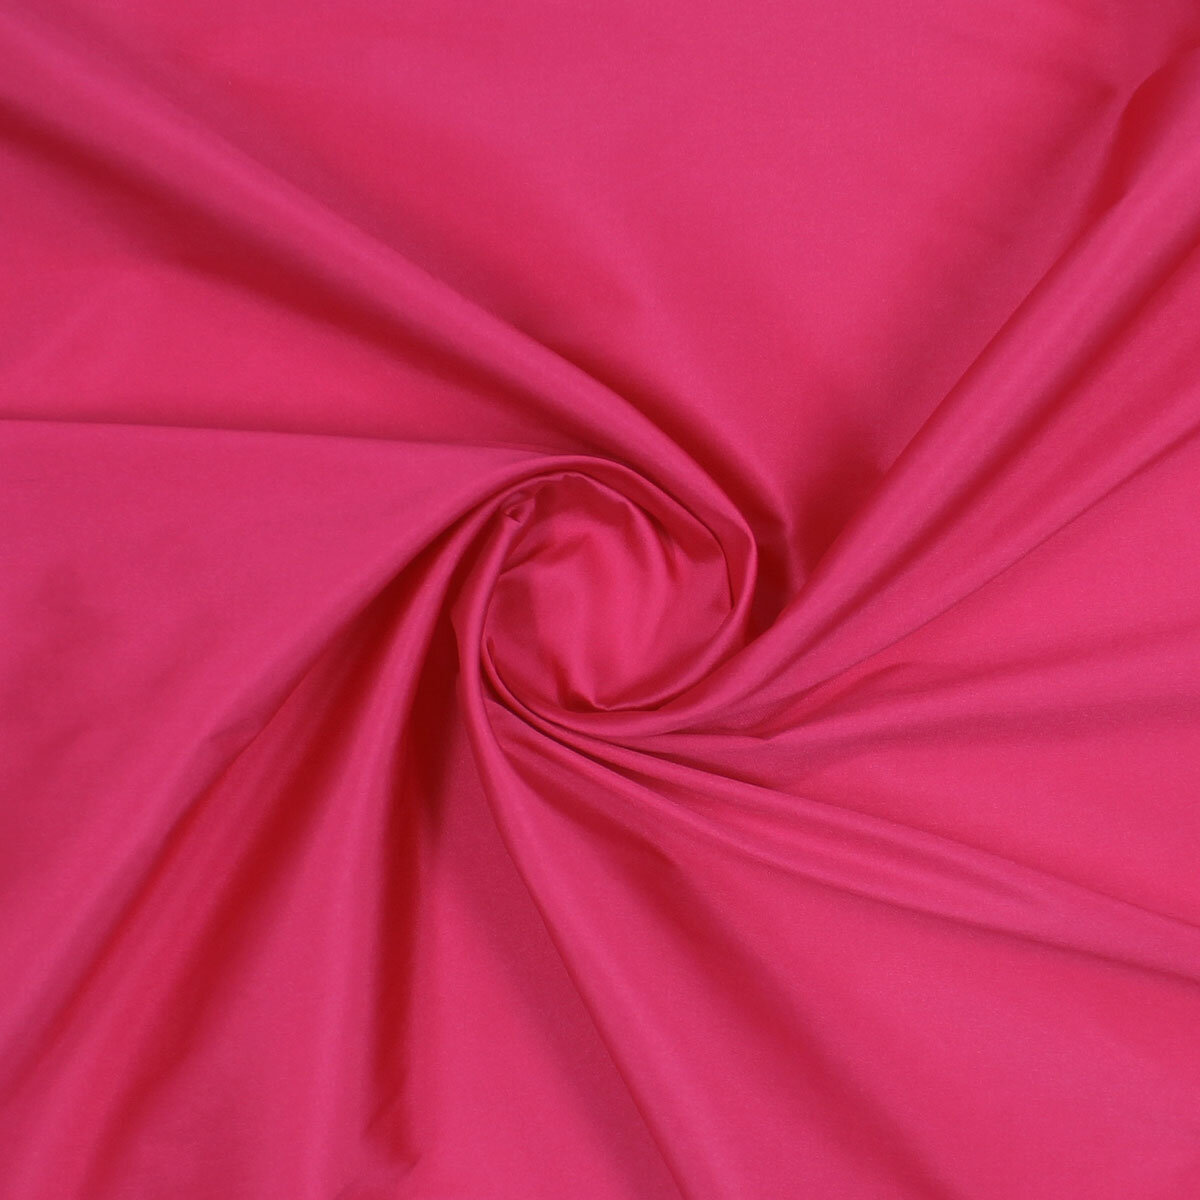 Ткань для шитья и рукоделия, тафта, цвет фуксия, плотность 70 гр/м2, 140х100 см